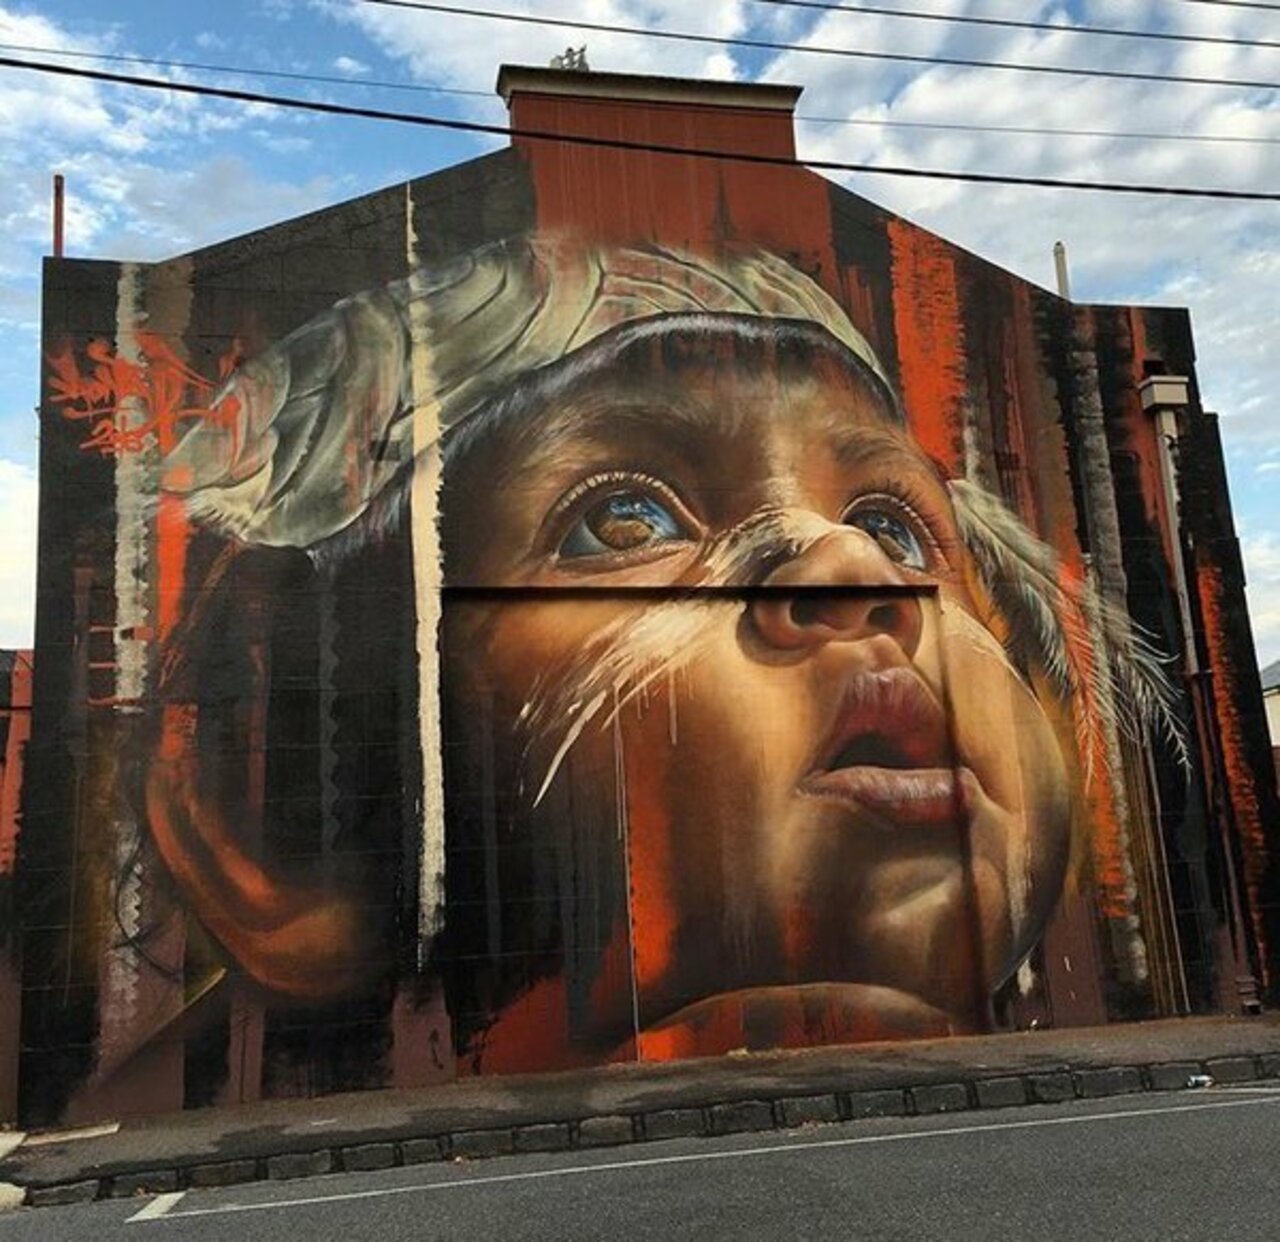 New Street Art • Adnate  Melbourne #art #mural #graffiti #streetart https://t.co/Sek25B6Zgt